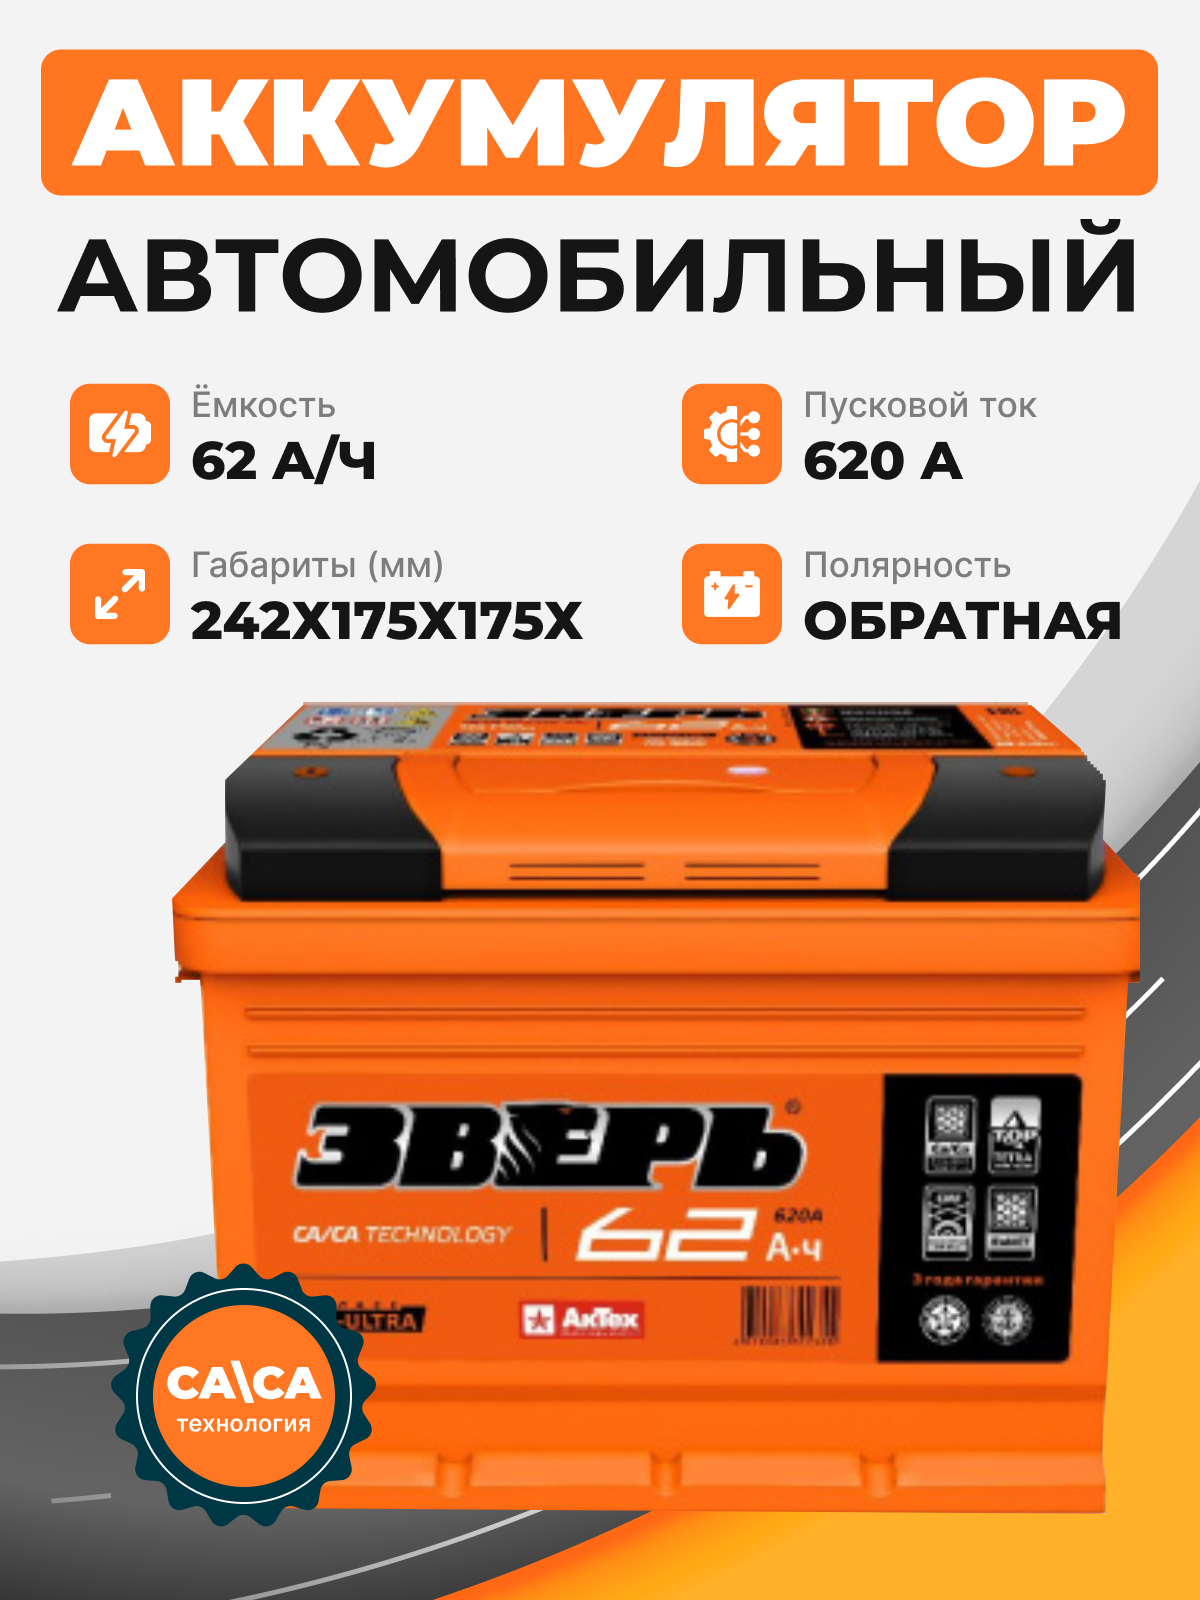 Аккумулятор Зверь 62 о.п. стартовый ток 620 EN низкий ZVK 62-3-R-n